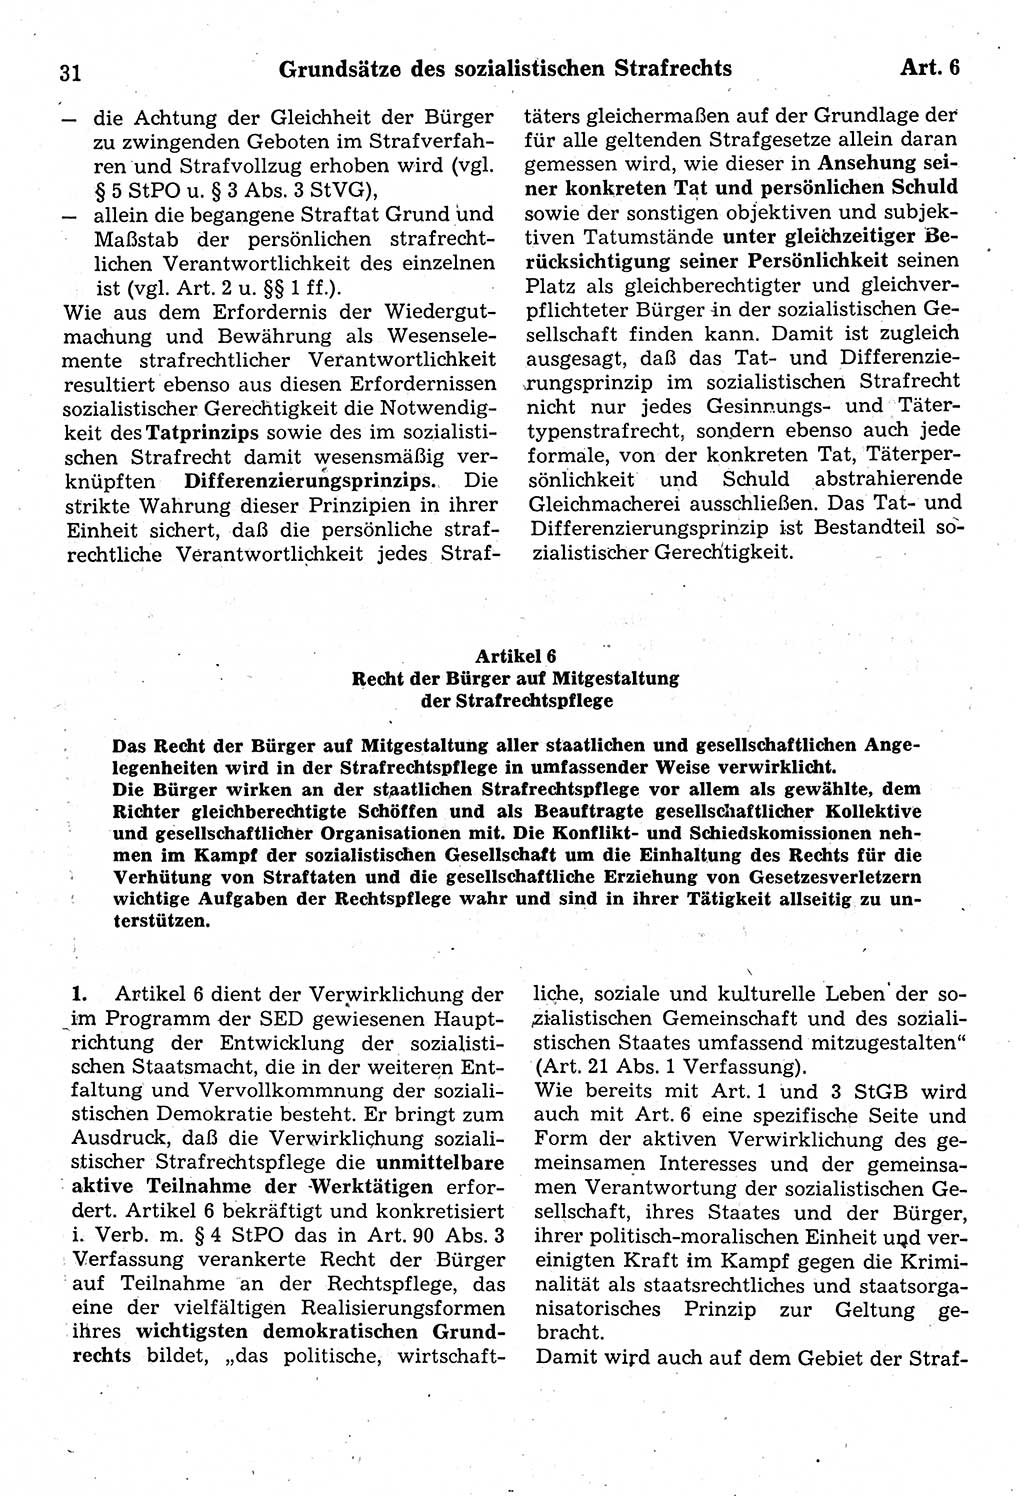 Strafrecht der Deutschen Demokratischen Republik (DDR), Kommentar zum Strafgesetzbuch (StGB) 1987, Seite 31 (Strafr. DDR Komm. StGB 1987, S. 31)